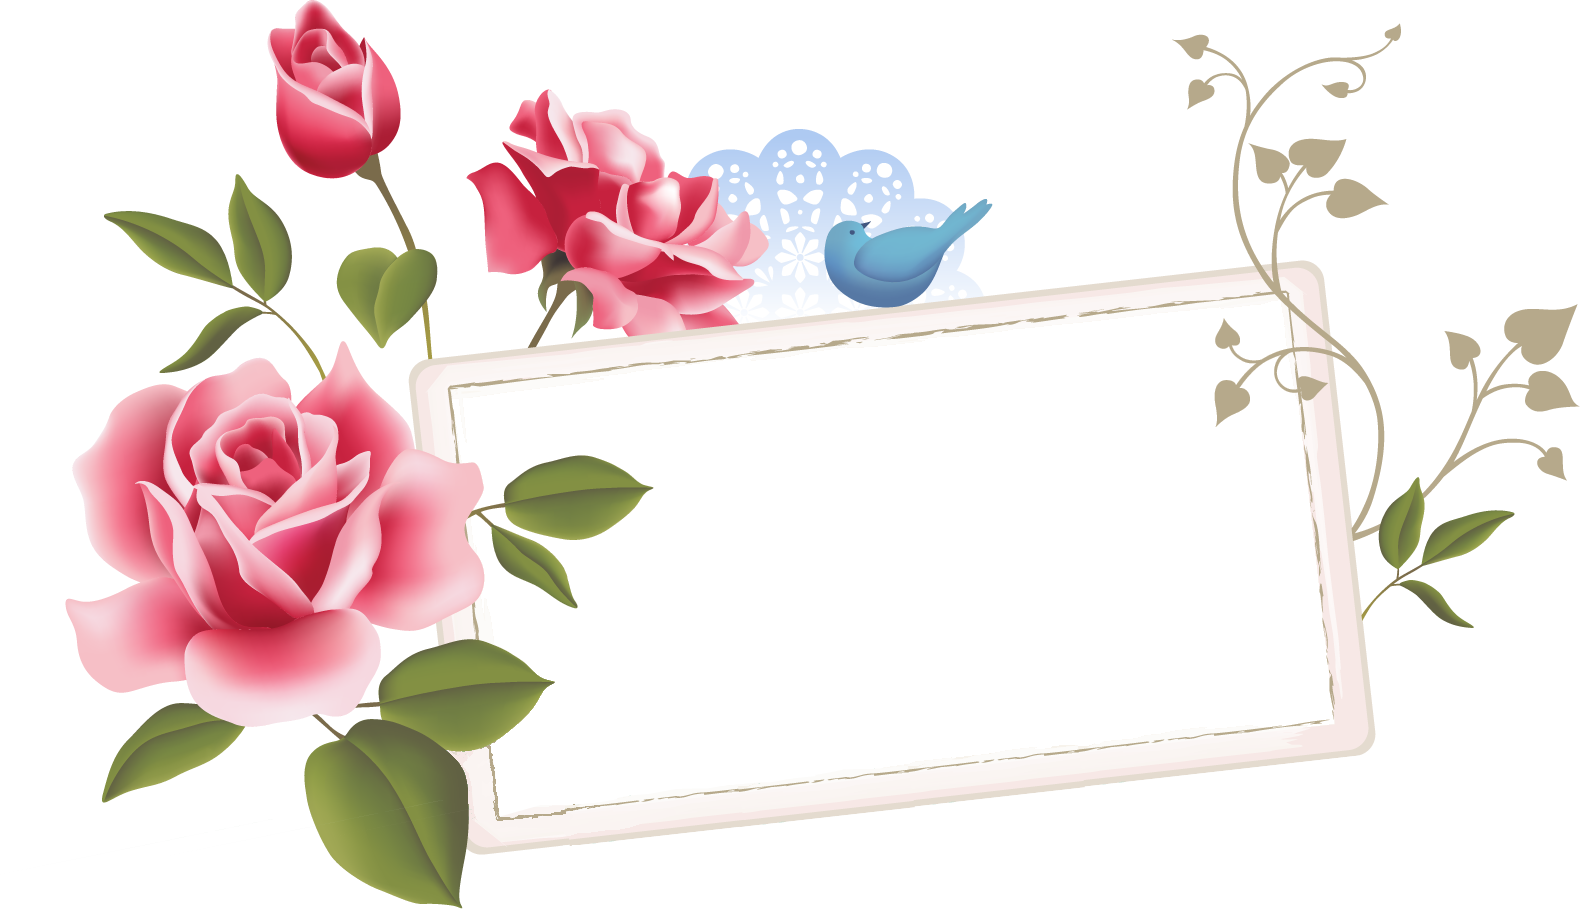 リアルな花のイラスト フリー素材 フレーム枠no 1093 ピンクのバラ 青い鳥